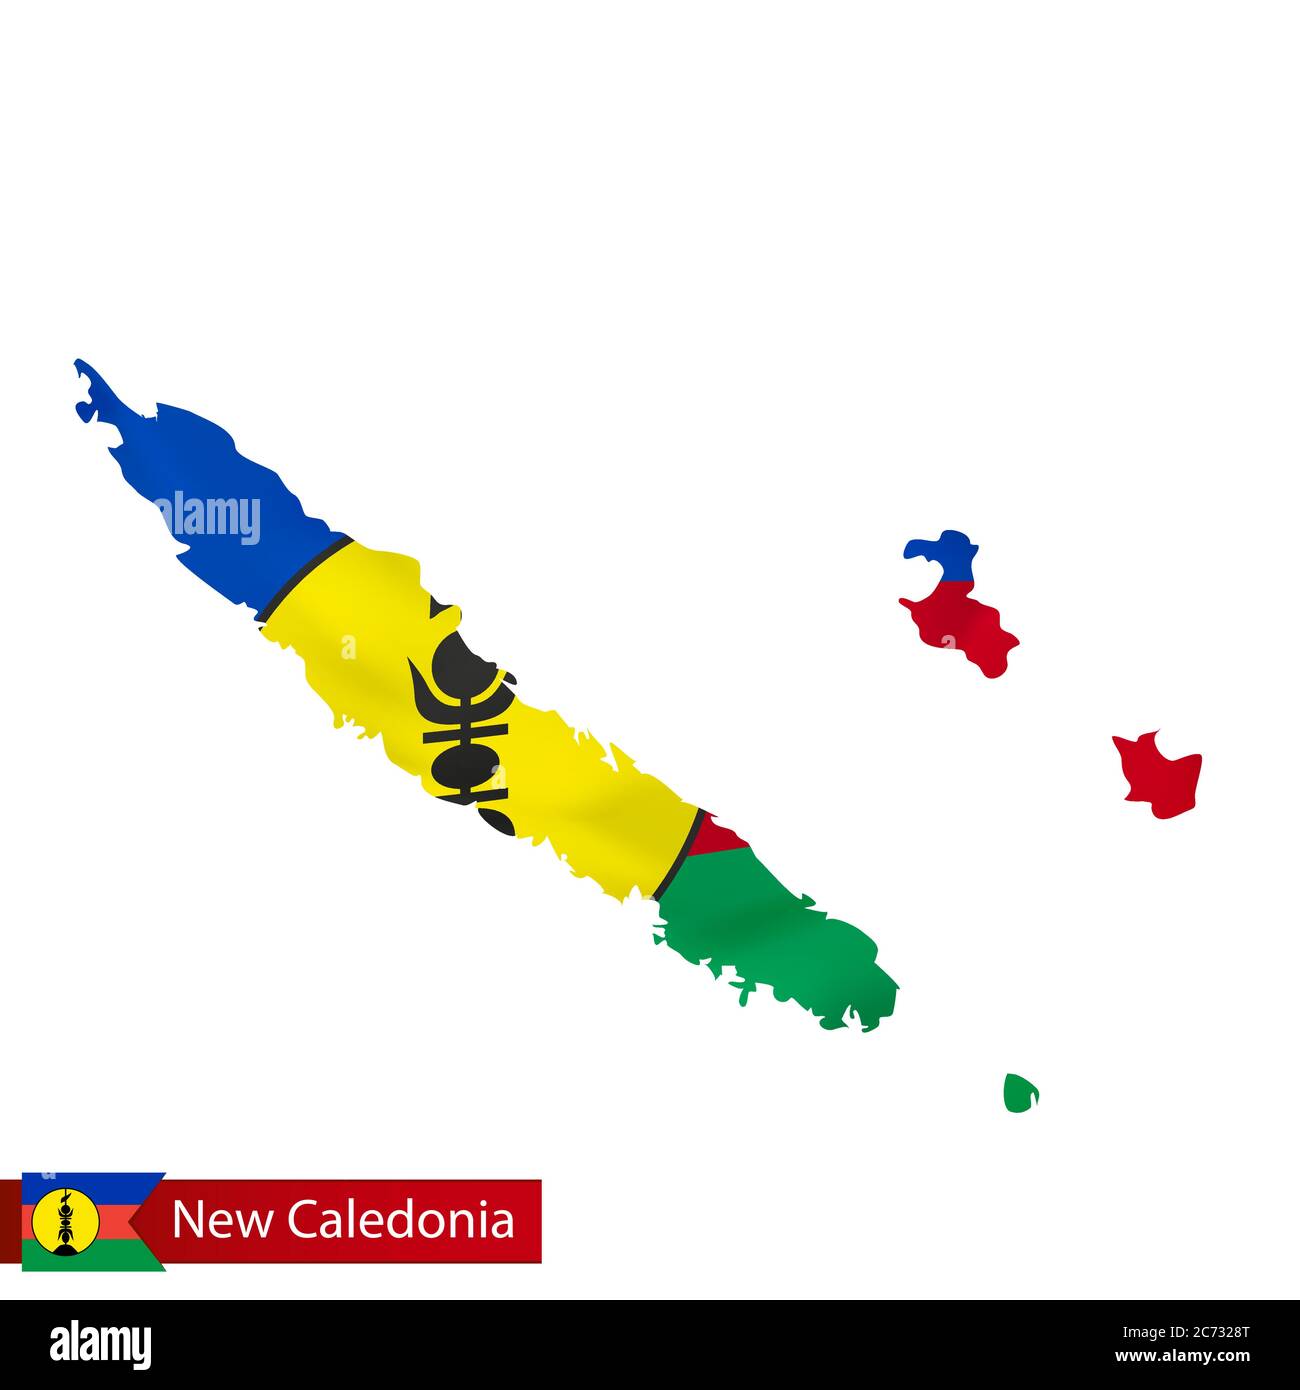 Флаг new caledonia. Флаг новой Каледонии и Франции. Карта с флагом новой Каледонии. Новая Каледония на карте. Новая Каледония флаг.